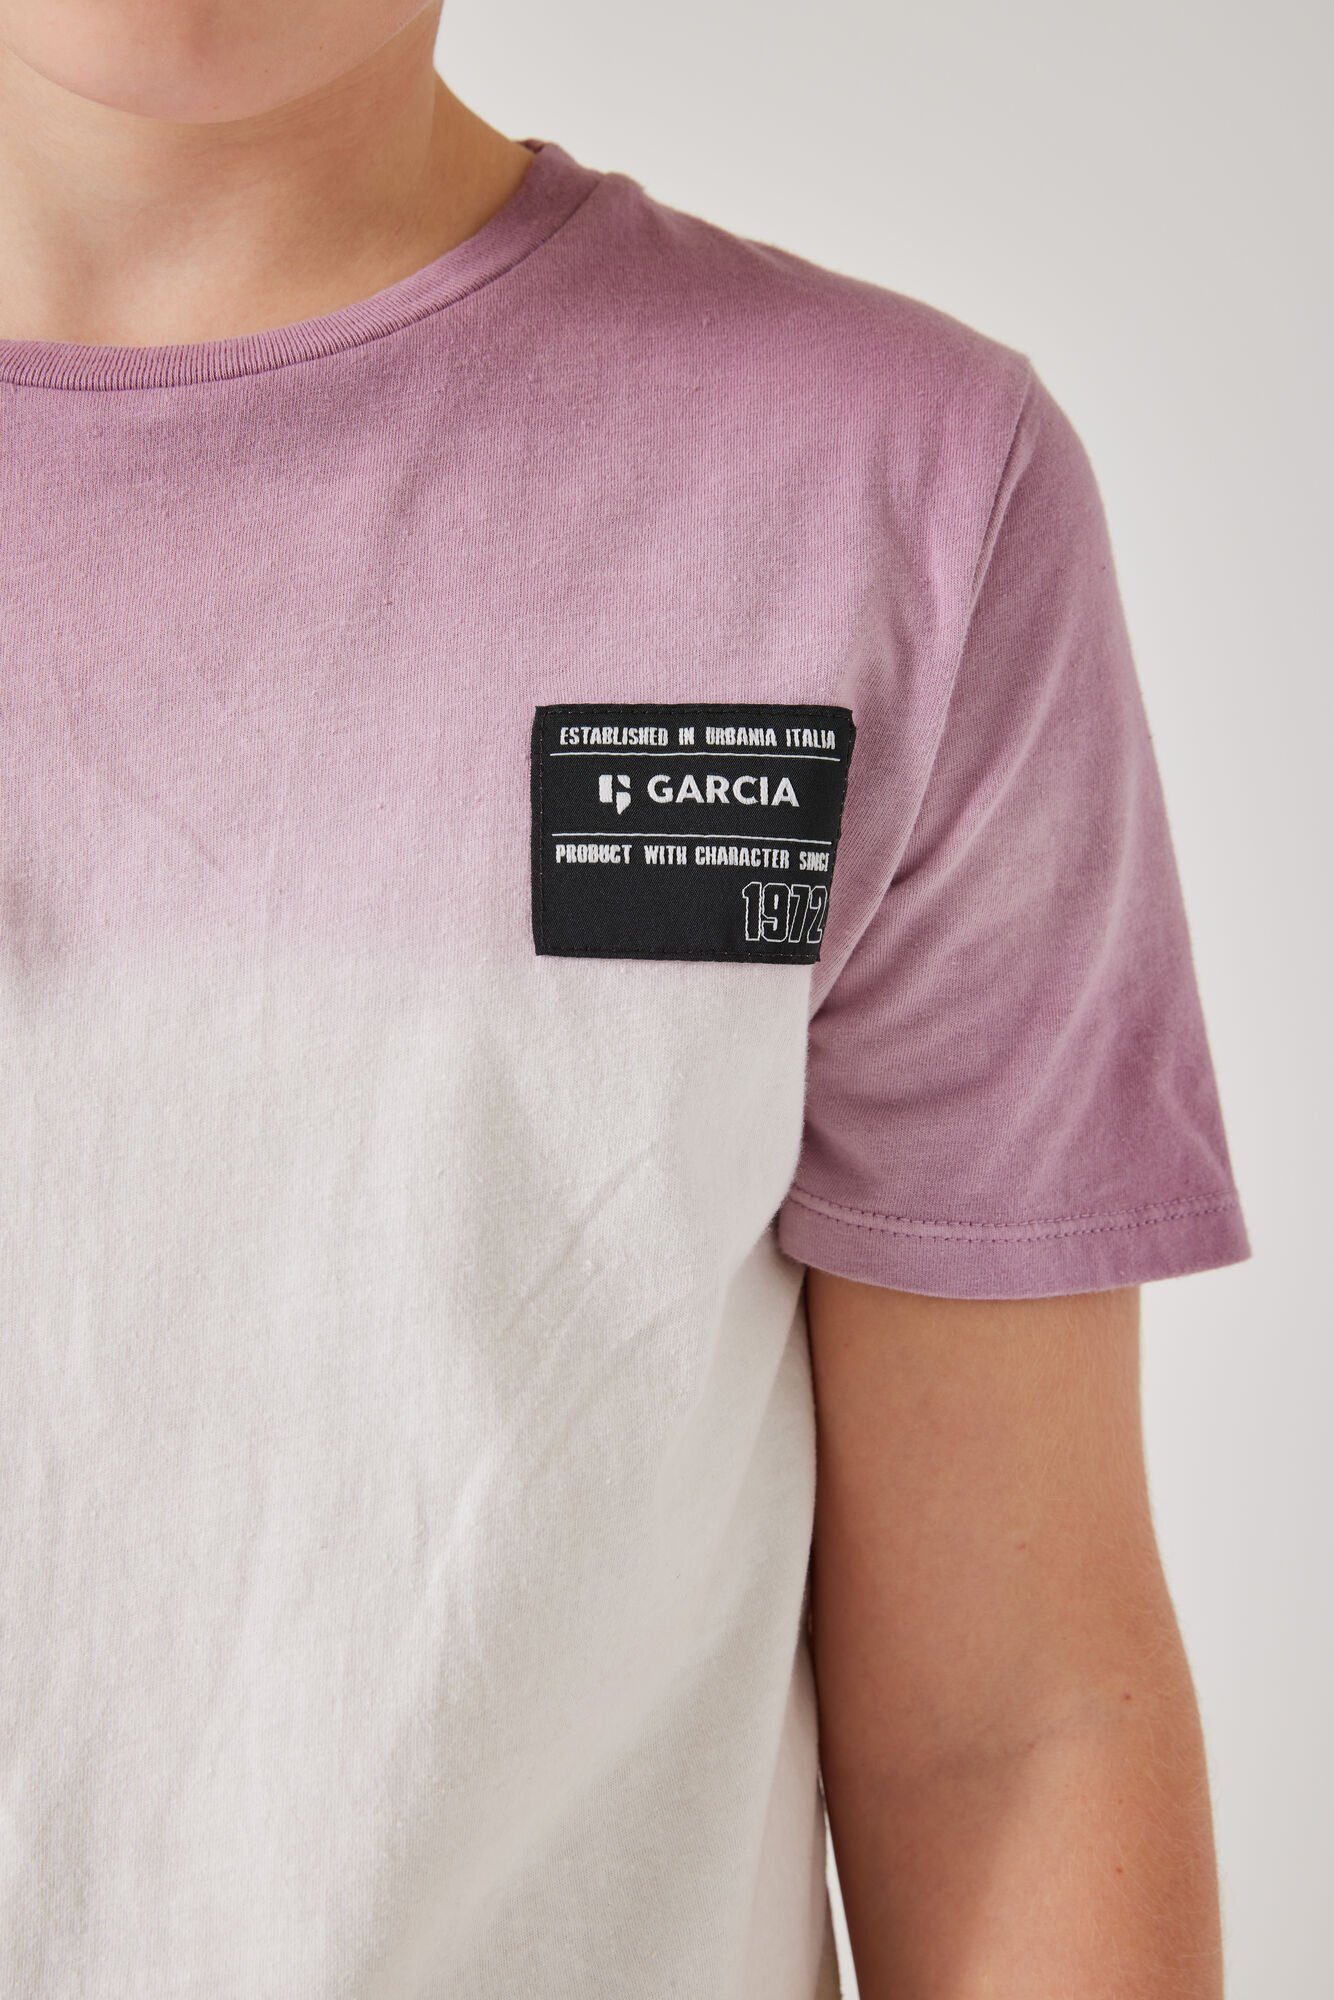 Garcia T-Shirt mit Farbverlauf off white